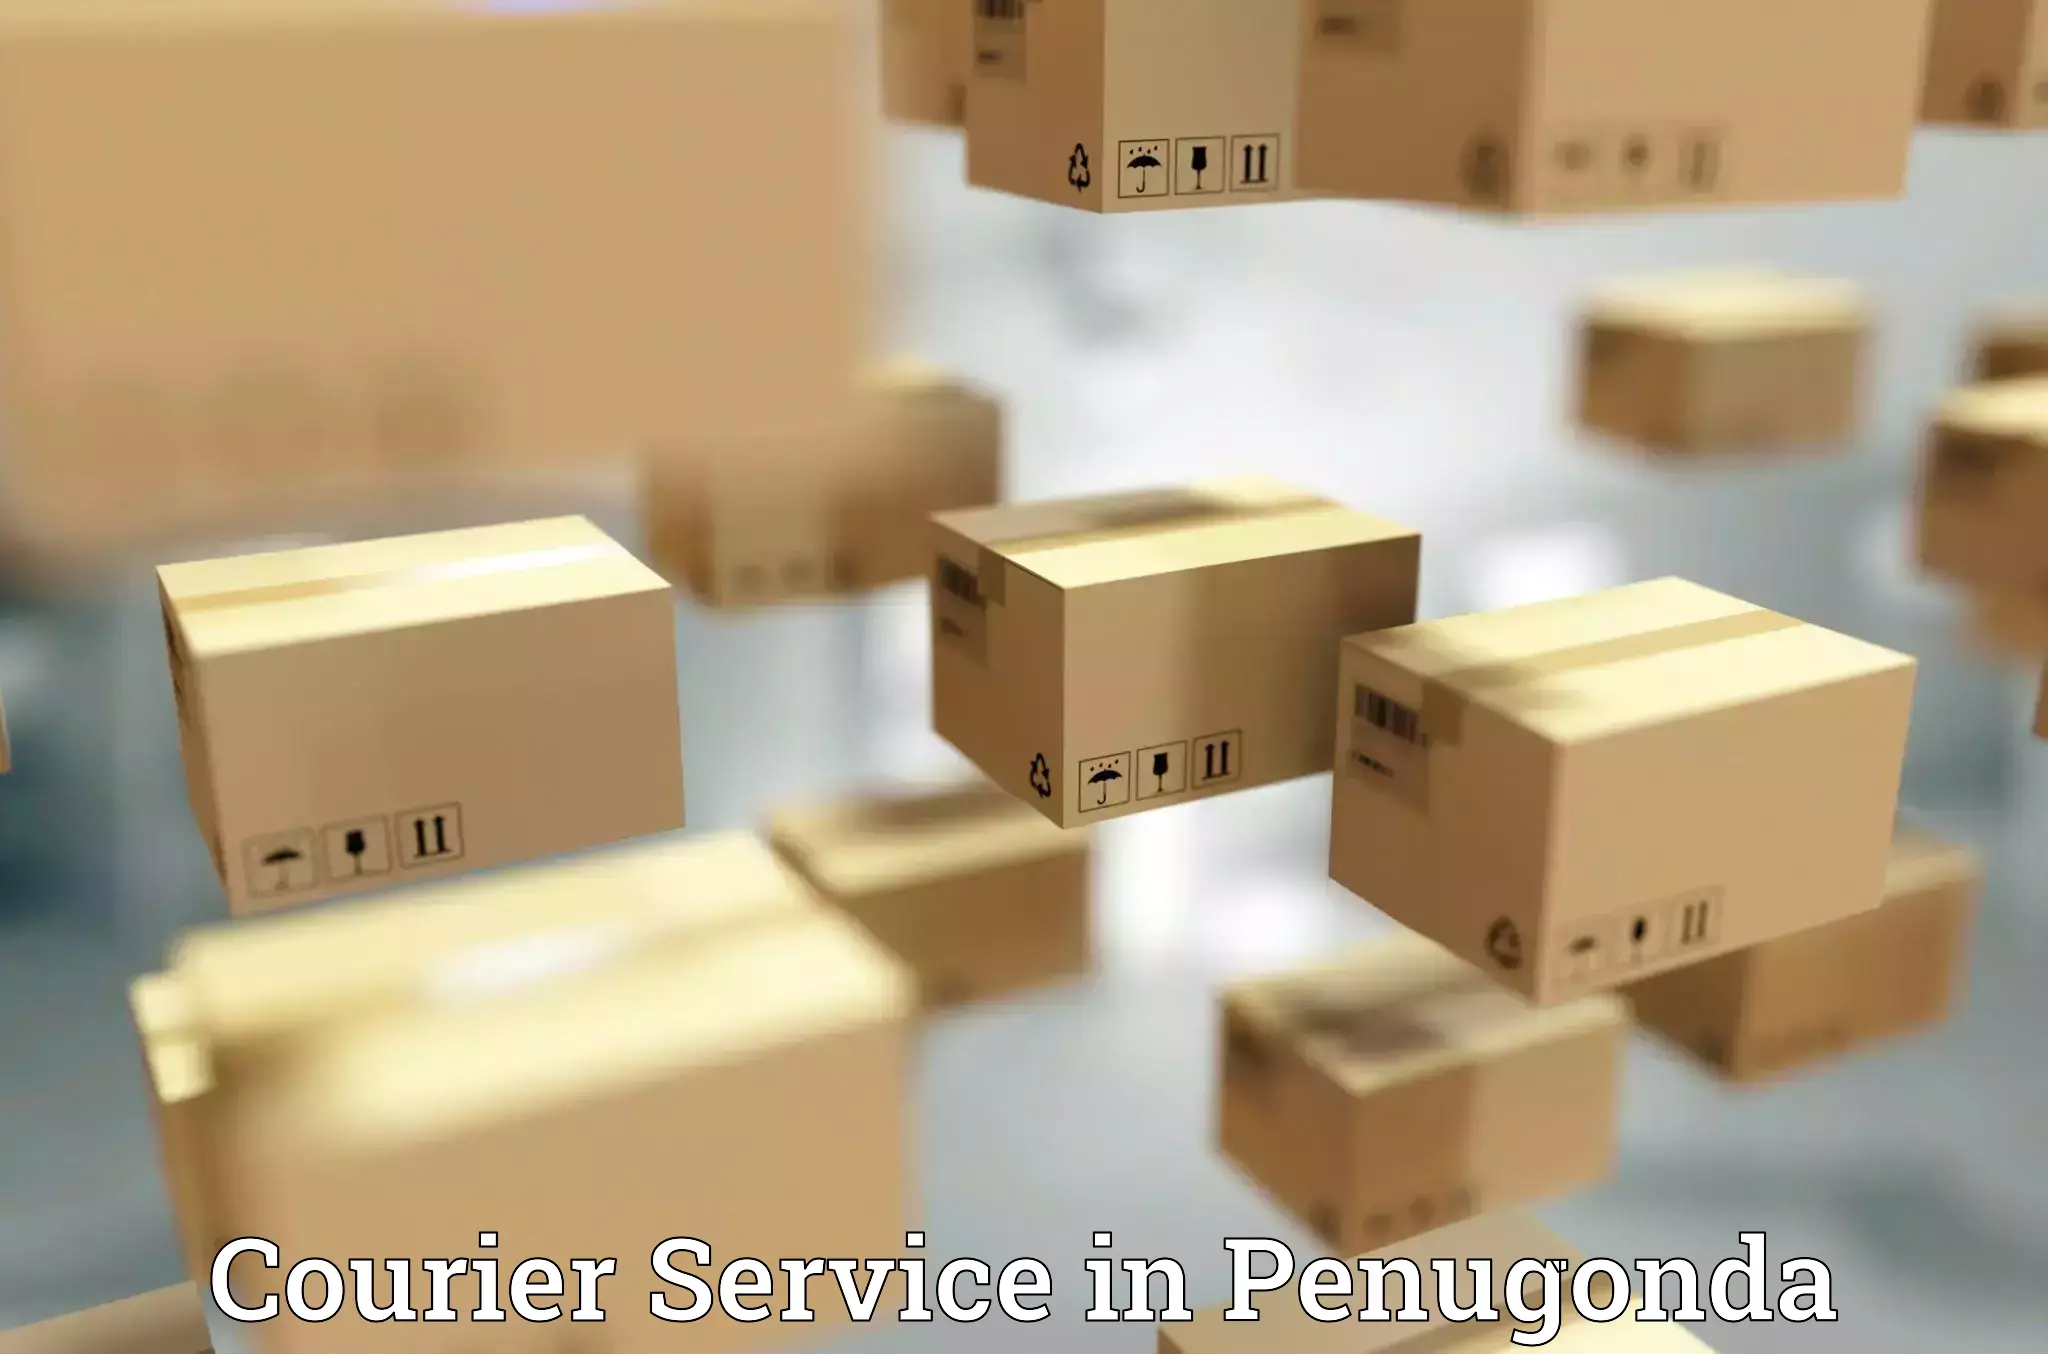 User-friendly delivery service in Penugonda